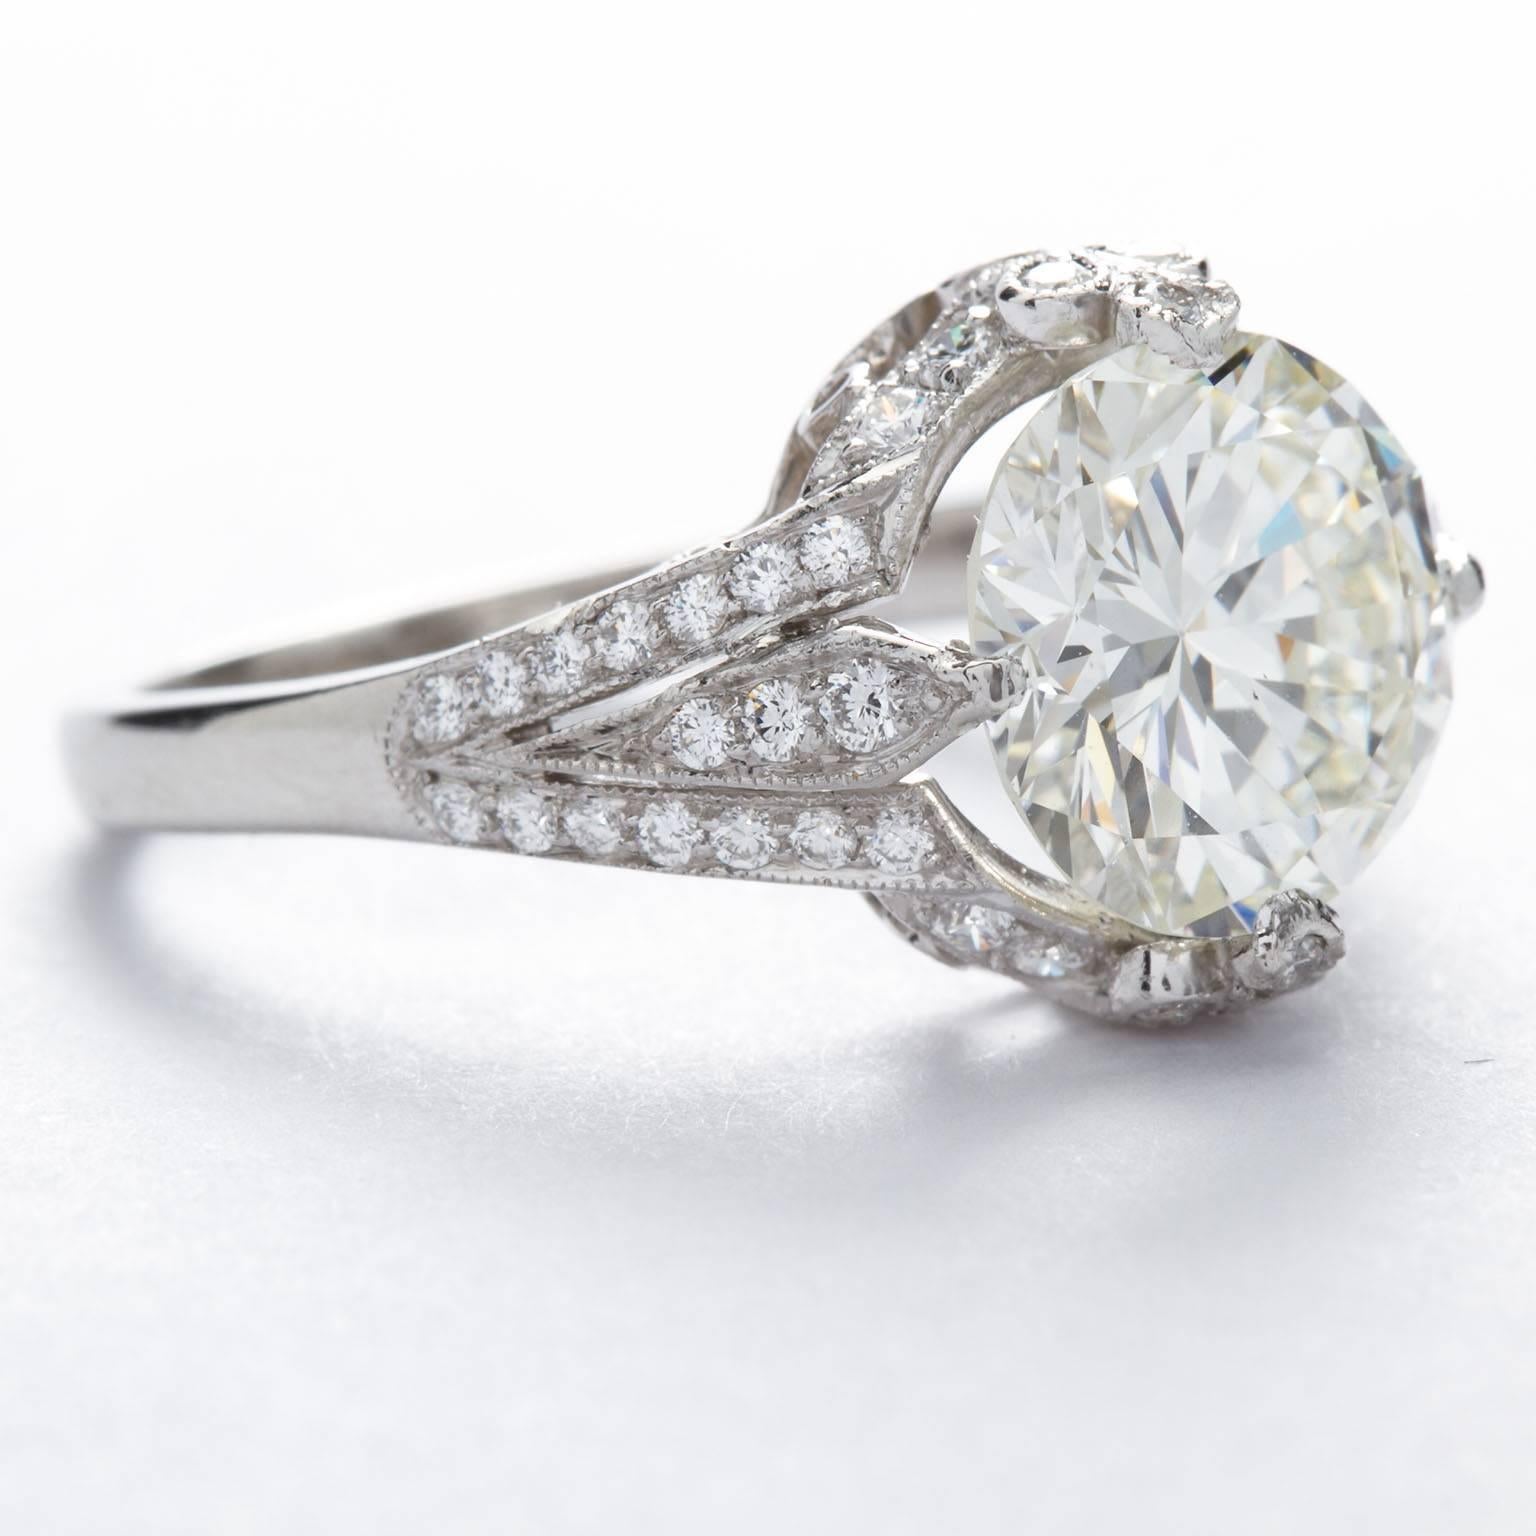 2 carat brilliant cut diamond ring